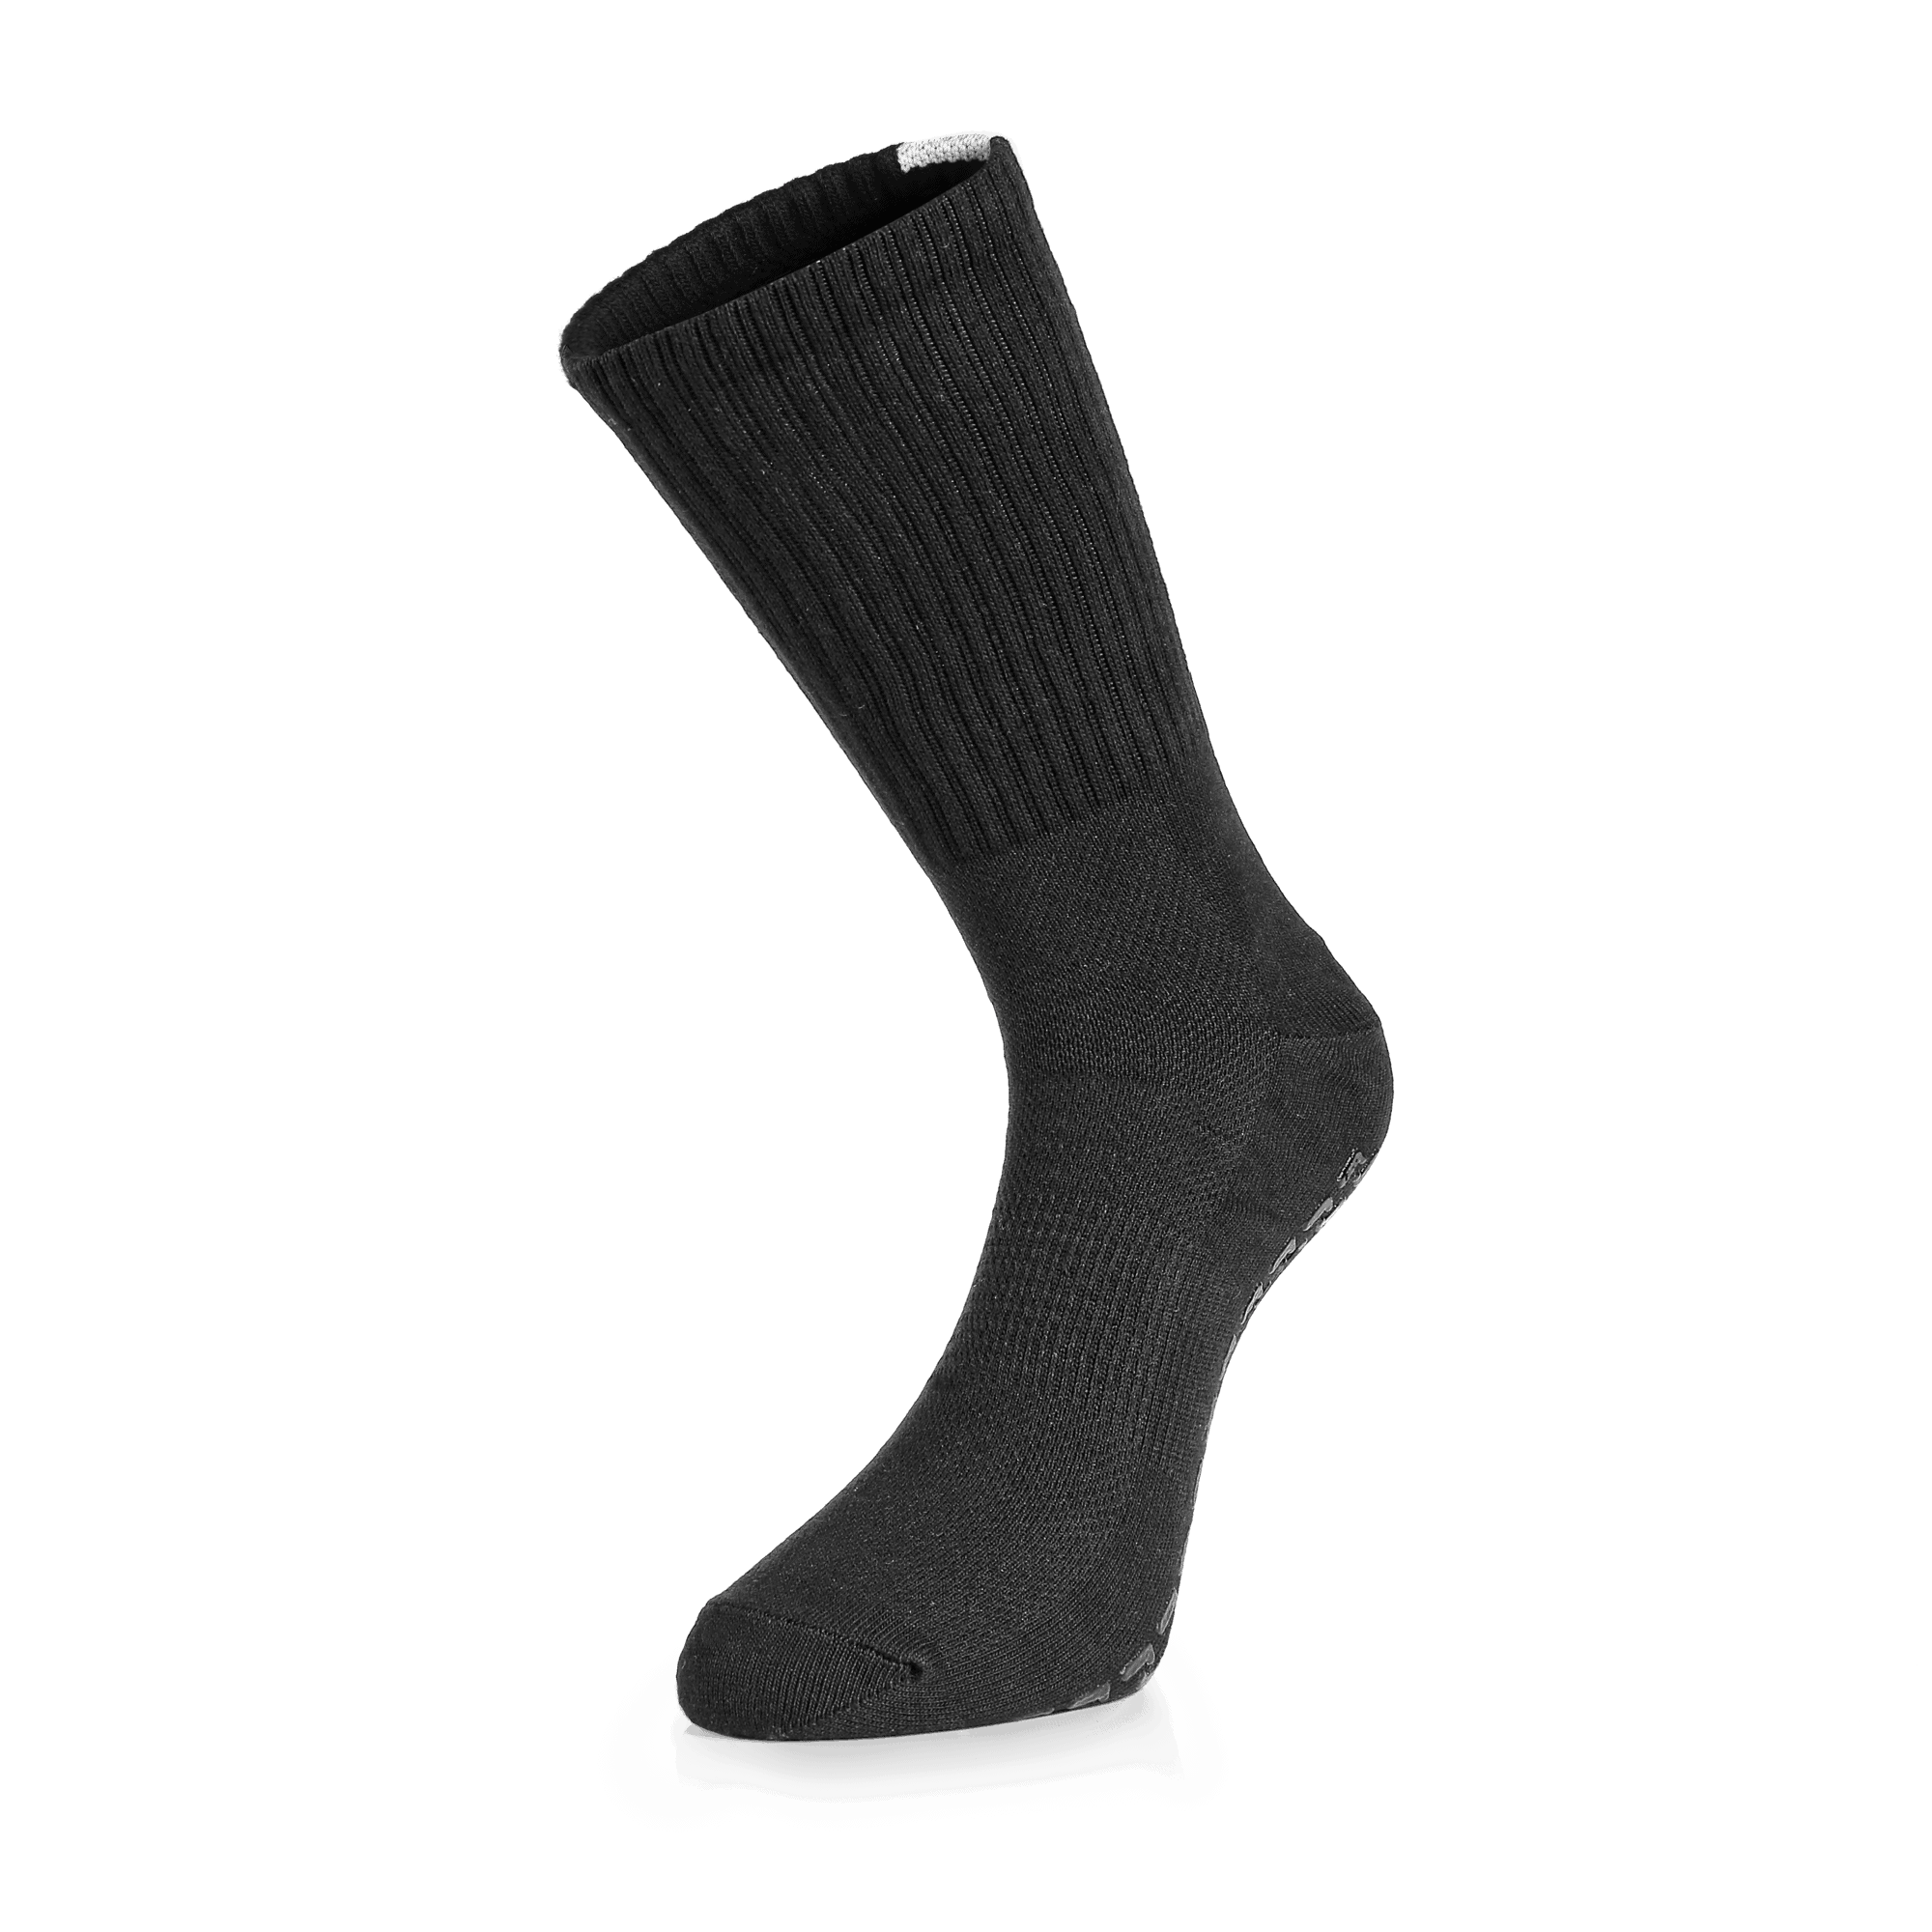 BU1 anti-slip socks black - silicone